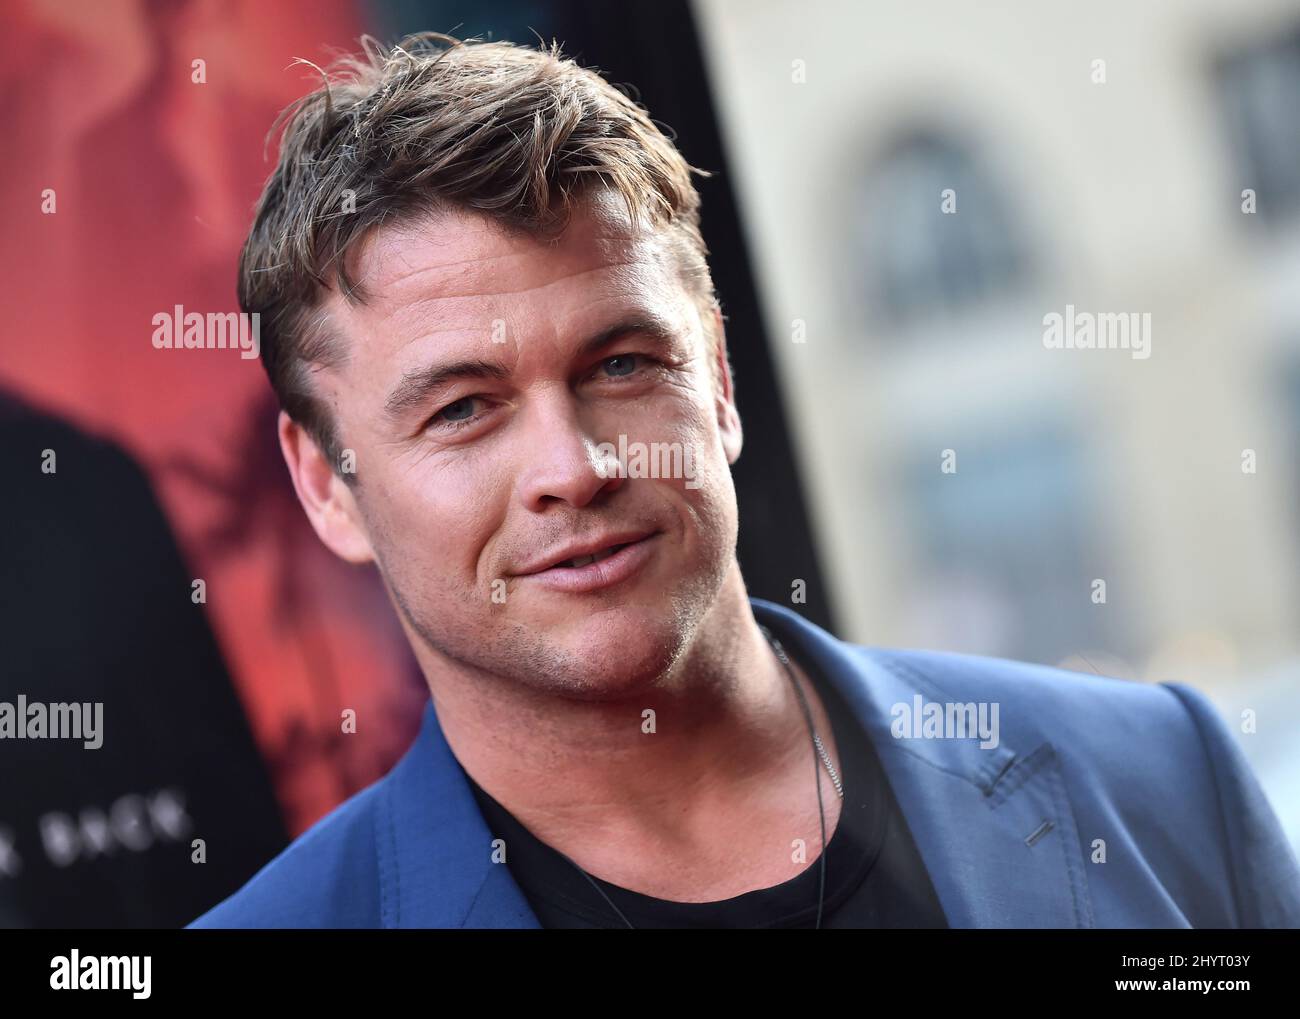 Luke Hemsworth bei der Premiere von „Reminiscence“ in Los Angeles am 17. August 2021 in Hollywood, CA. Stockfoto